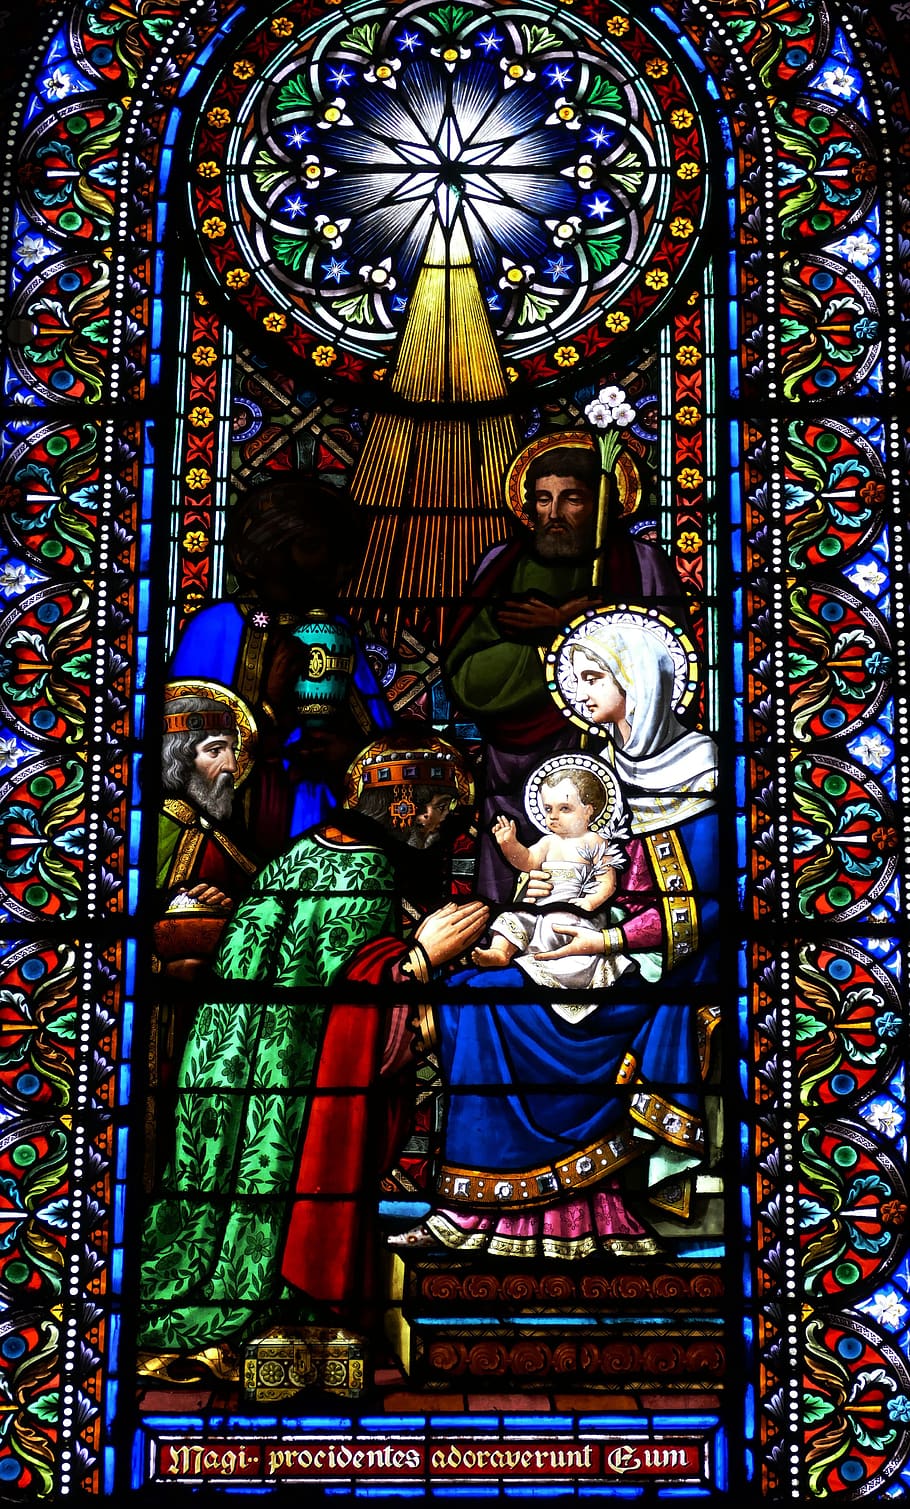 janela da igreja, vitral, igreja, cristianismo, fé, maria, cristão, arte, natal, montserrat